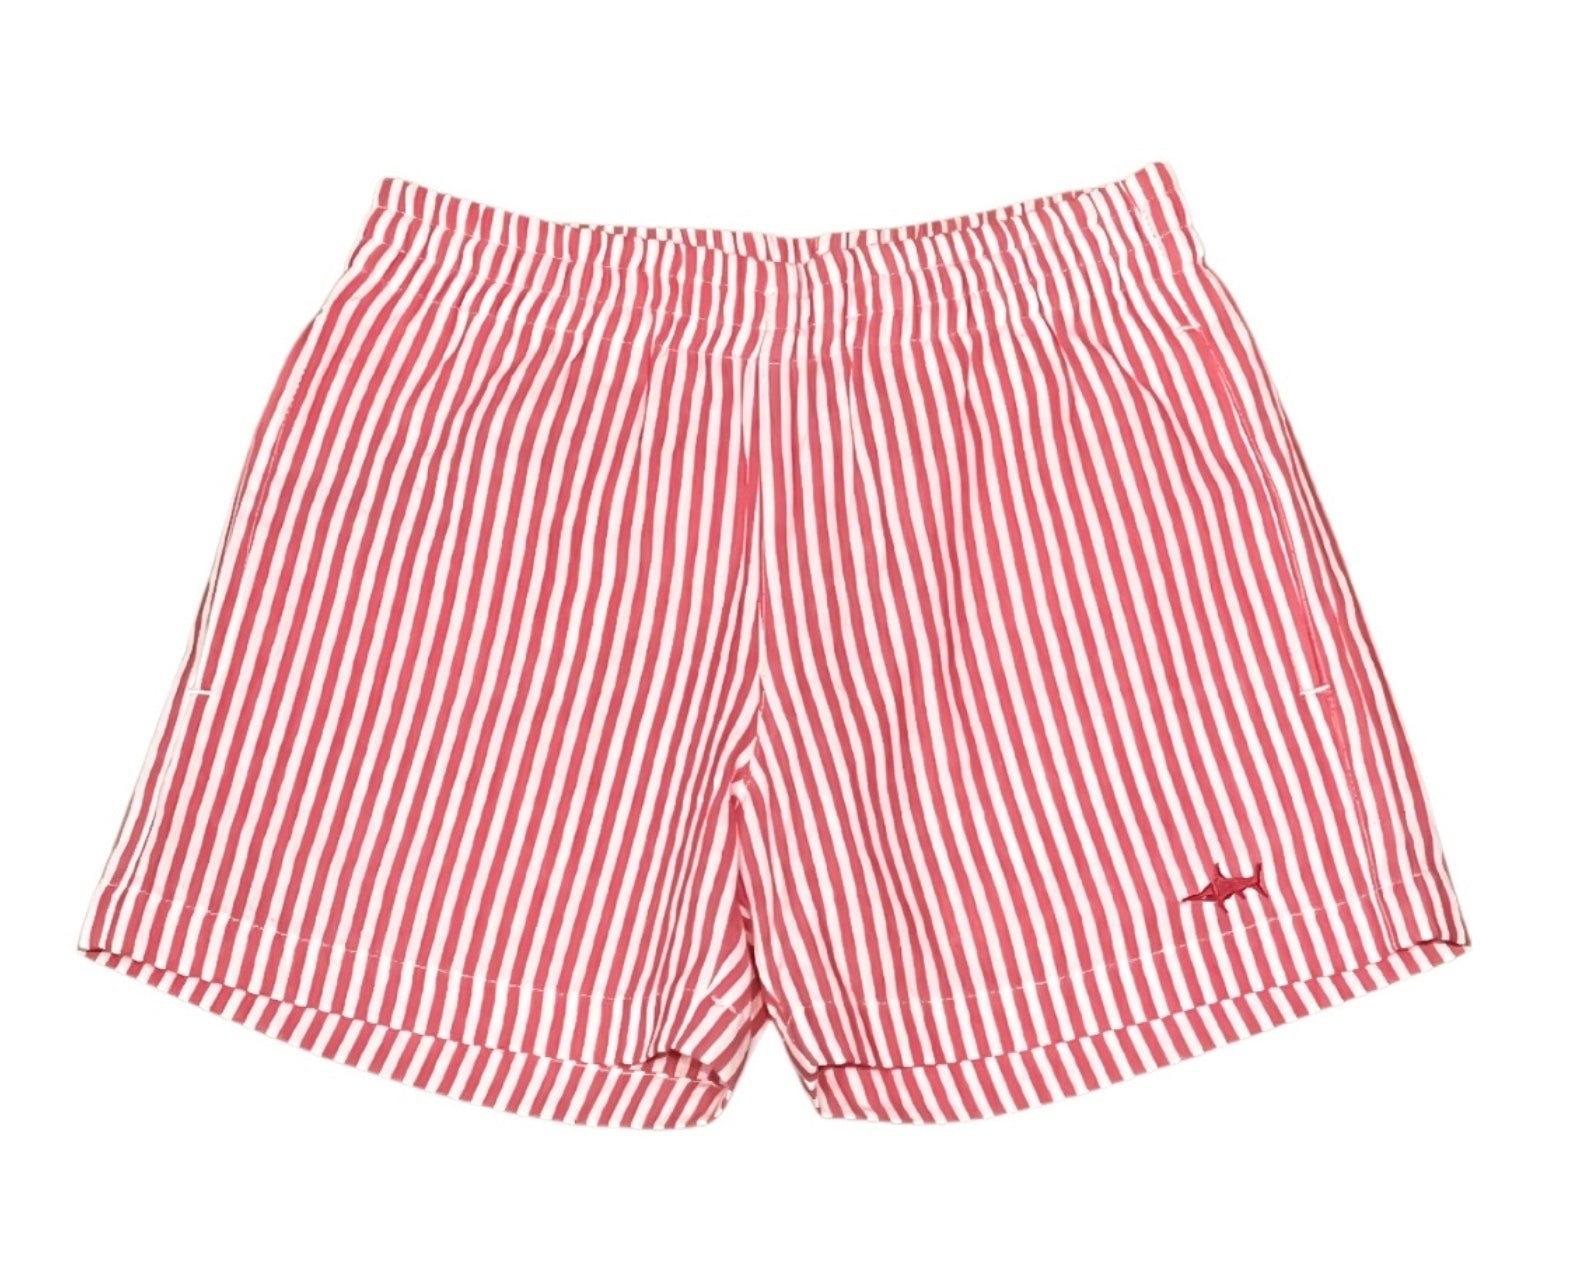 Naples Shorts - Red Seersucker